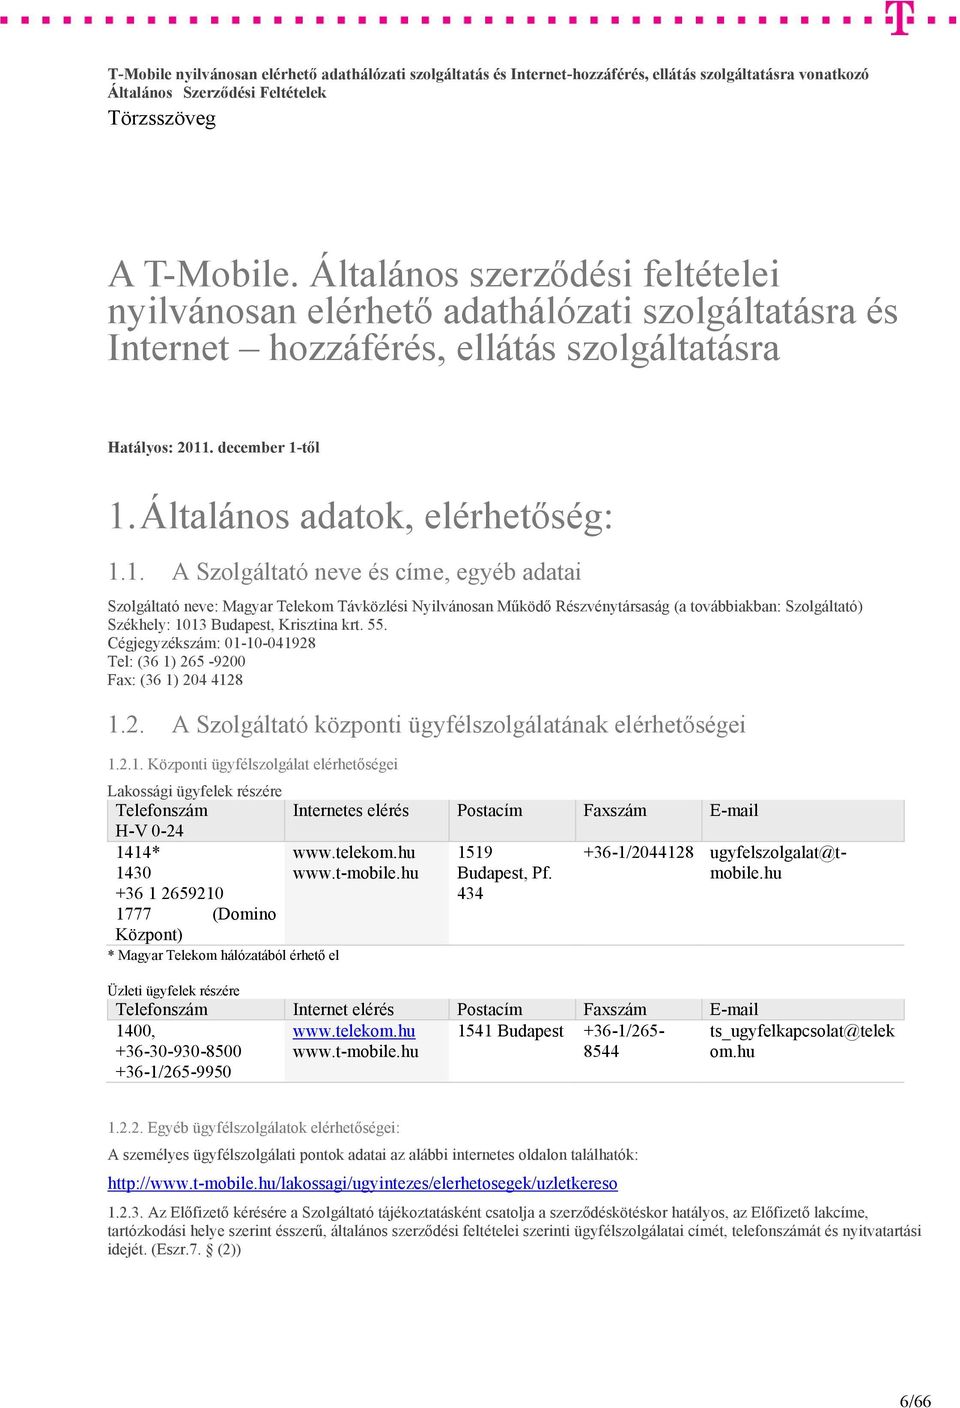 1. A Szolgáltató neve és címe, egyéb adatai Szolgáltató neve: Magyar Telekom Távközlési Nyilvánosan Működő Részvénytársaság (a továbbiakban: Szolgáltató) Székhely: 1013 Budapest, Krisztina krt. 55.